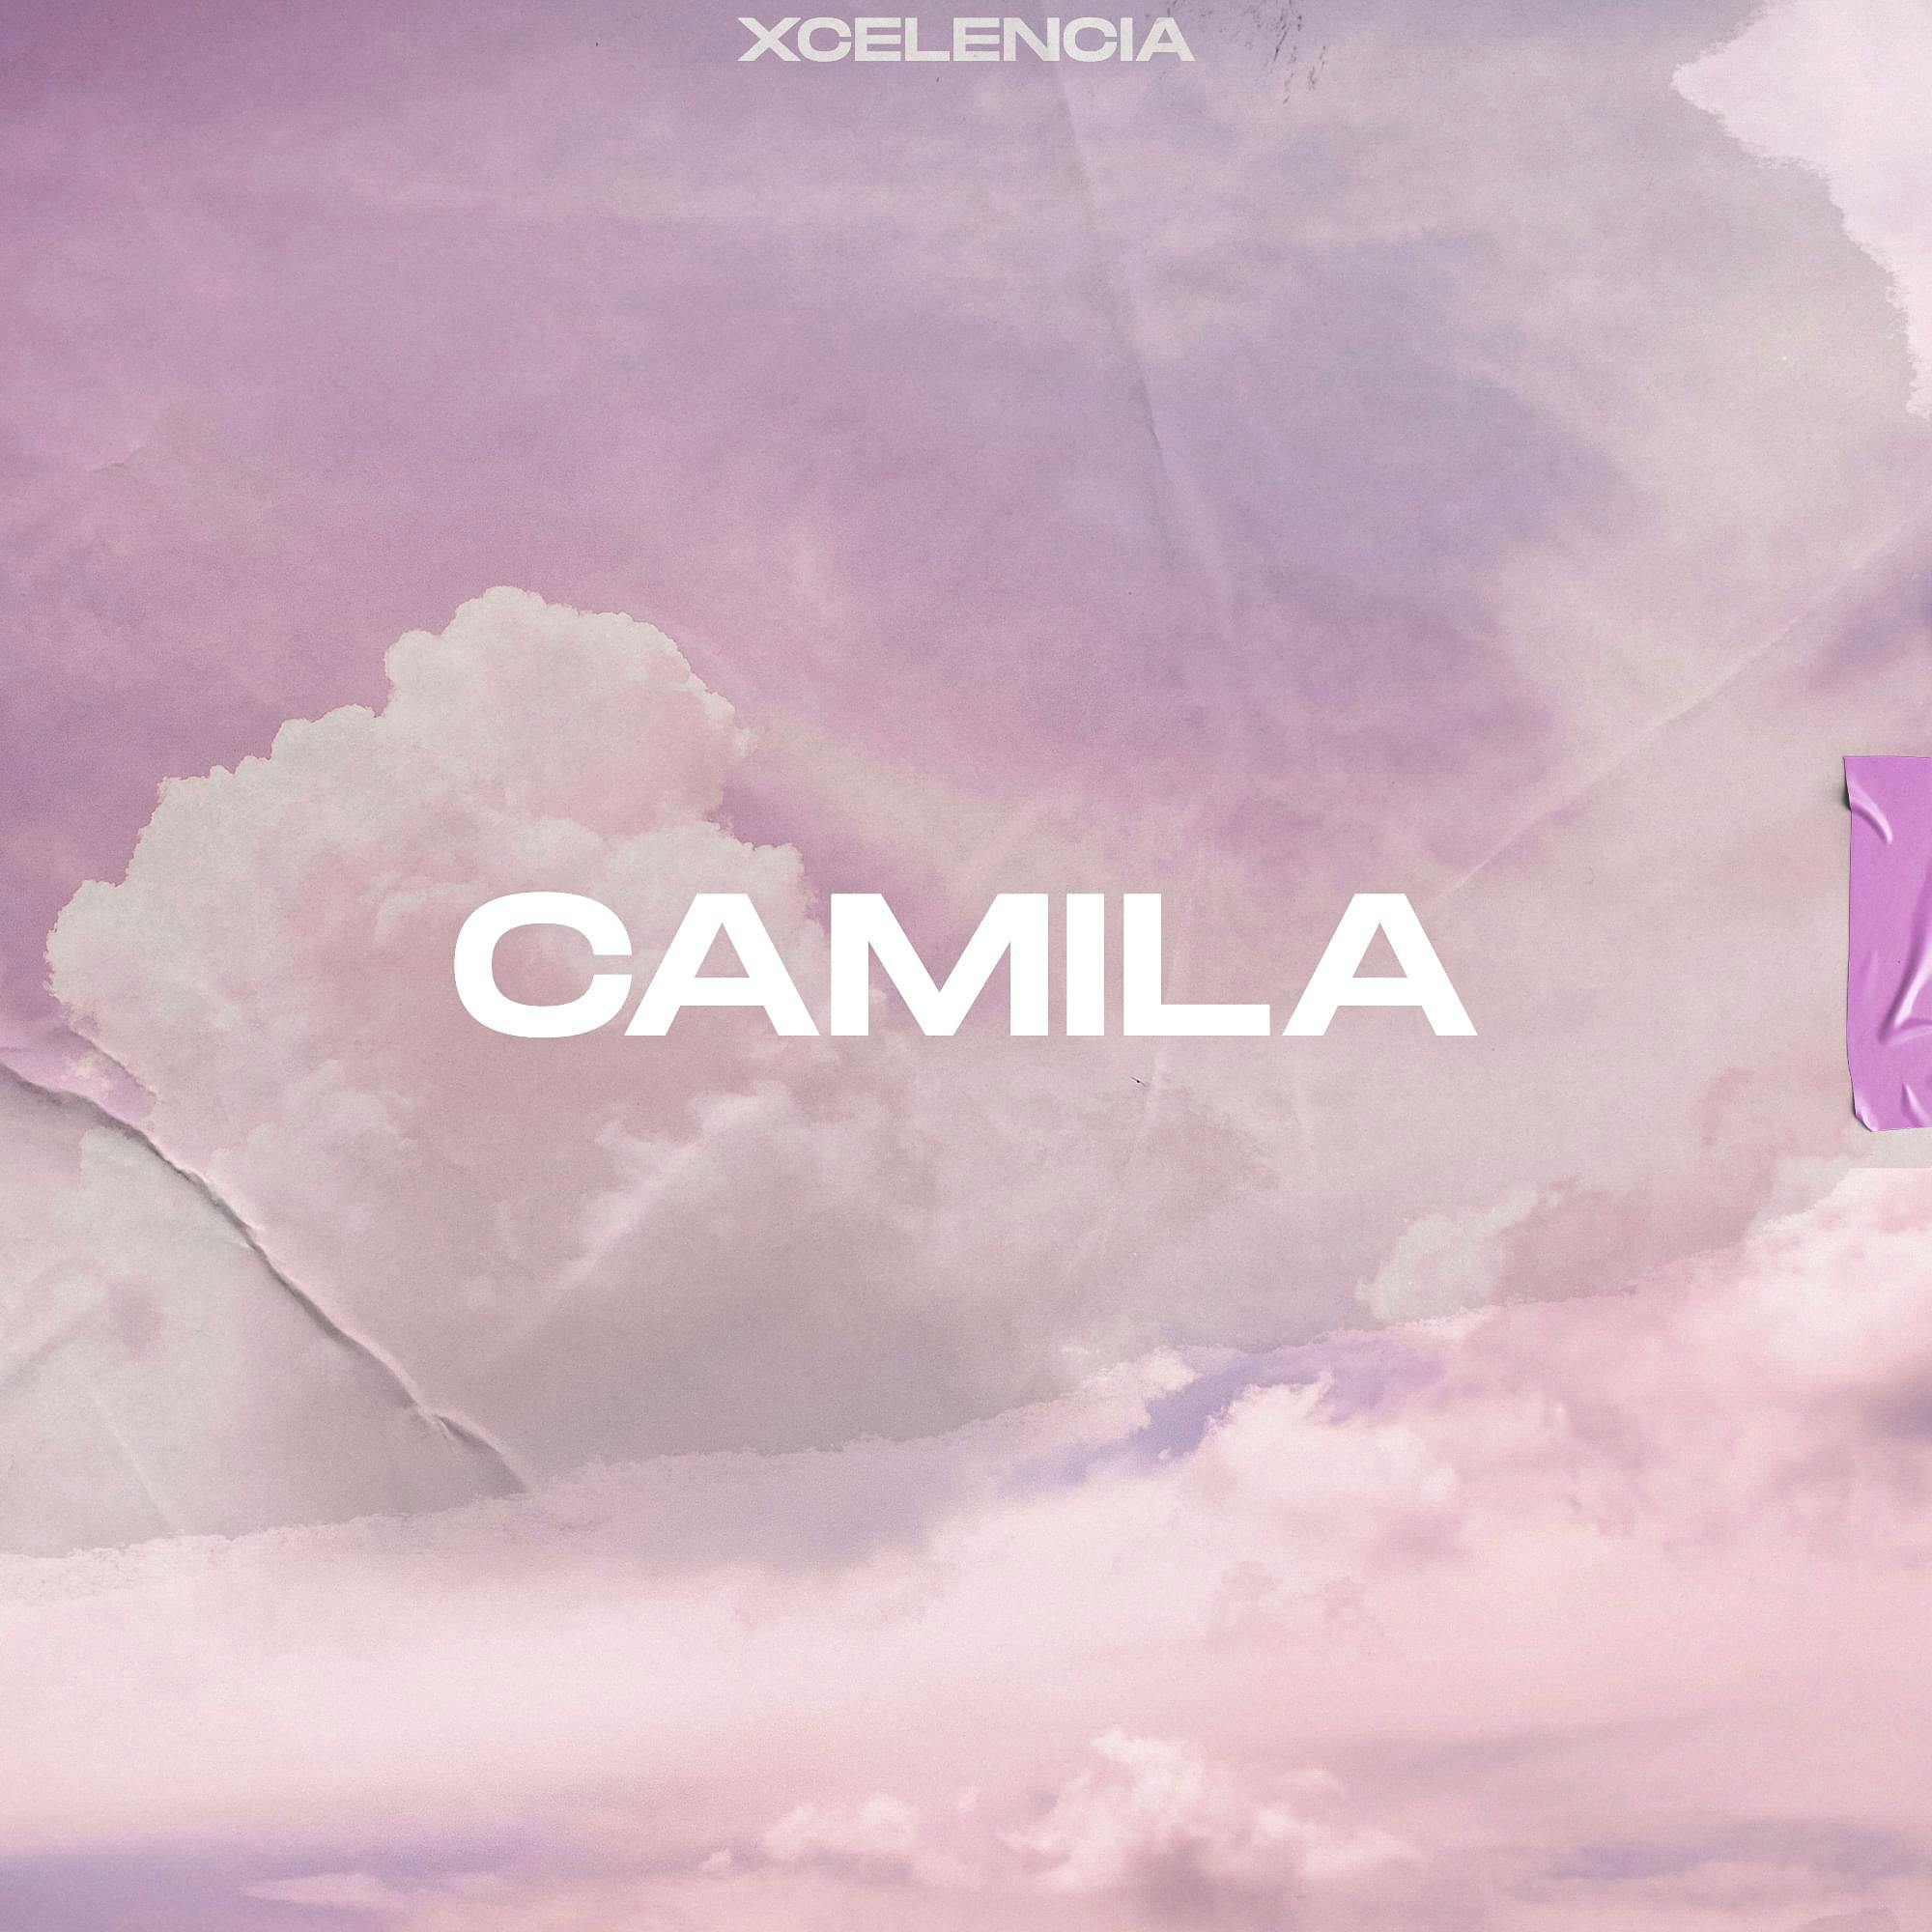 Cover art for Xcelencia's song: Camila's song